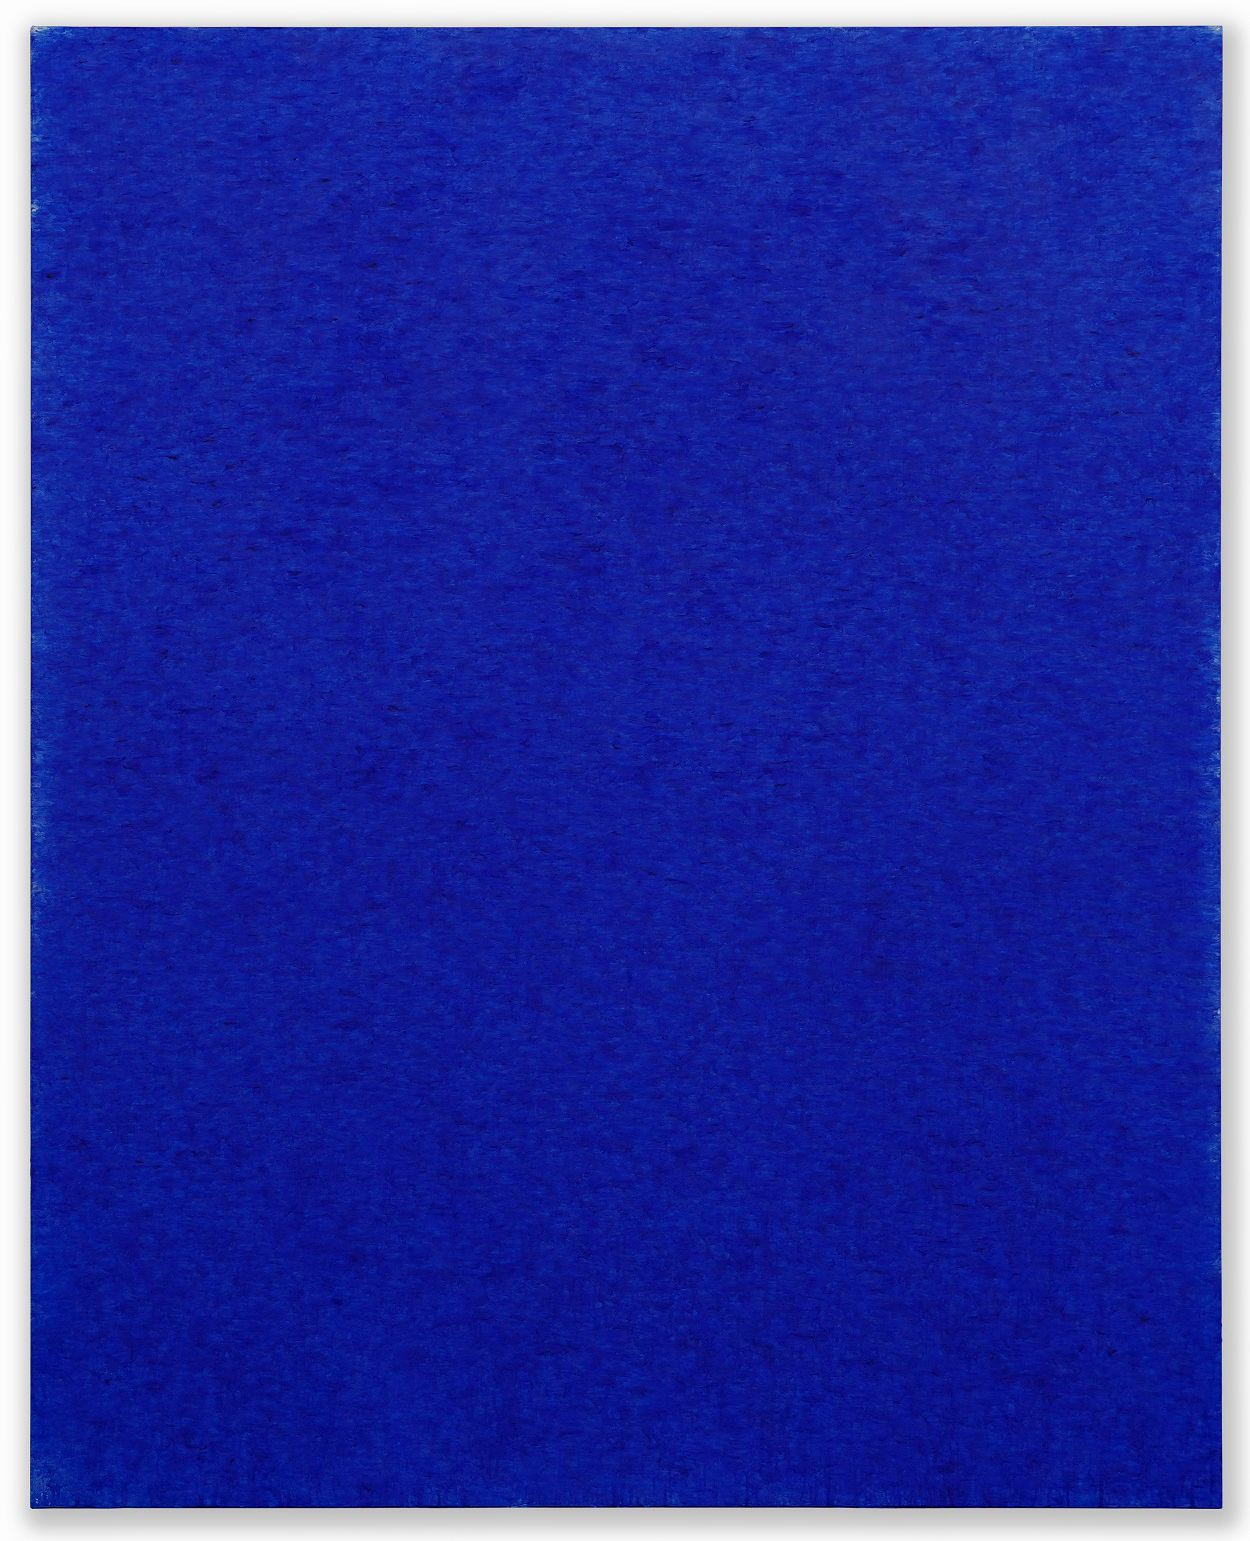 김춘수 작가(Kim Tschoonsu)=울트라-마린 22126(ULTRA-MARINE 22126), 162.2×130.3㎝ Oil on canvas, 2022. 갤러리 신라 GALLERY SHILLA, 부스넘버 D44.